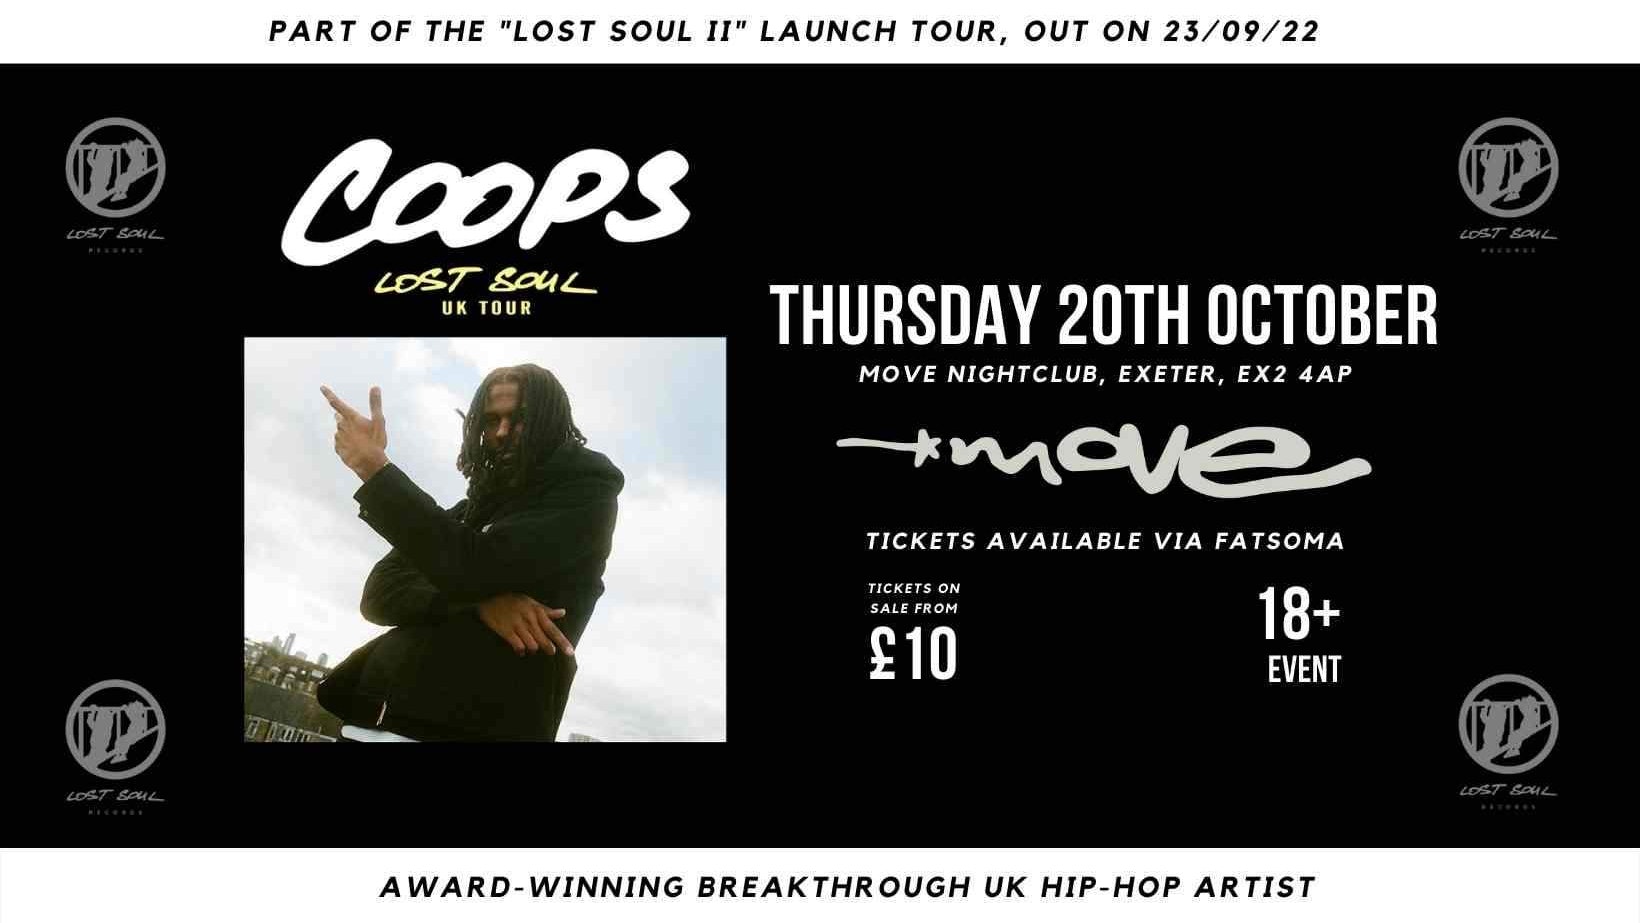 Coops- lost soul 2 album tour